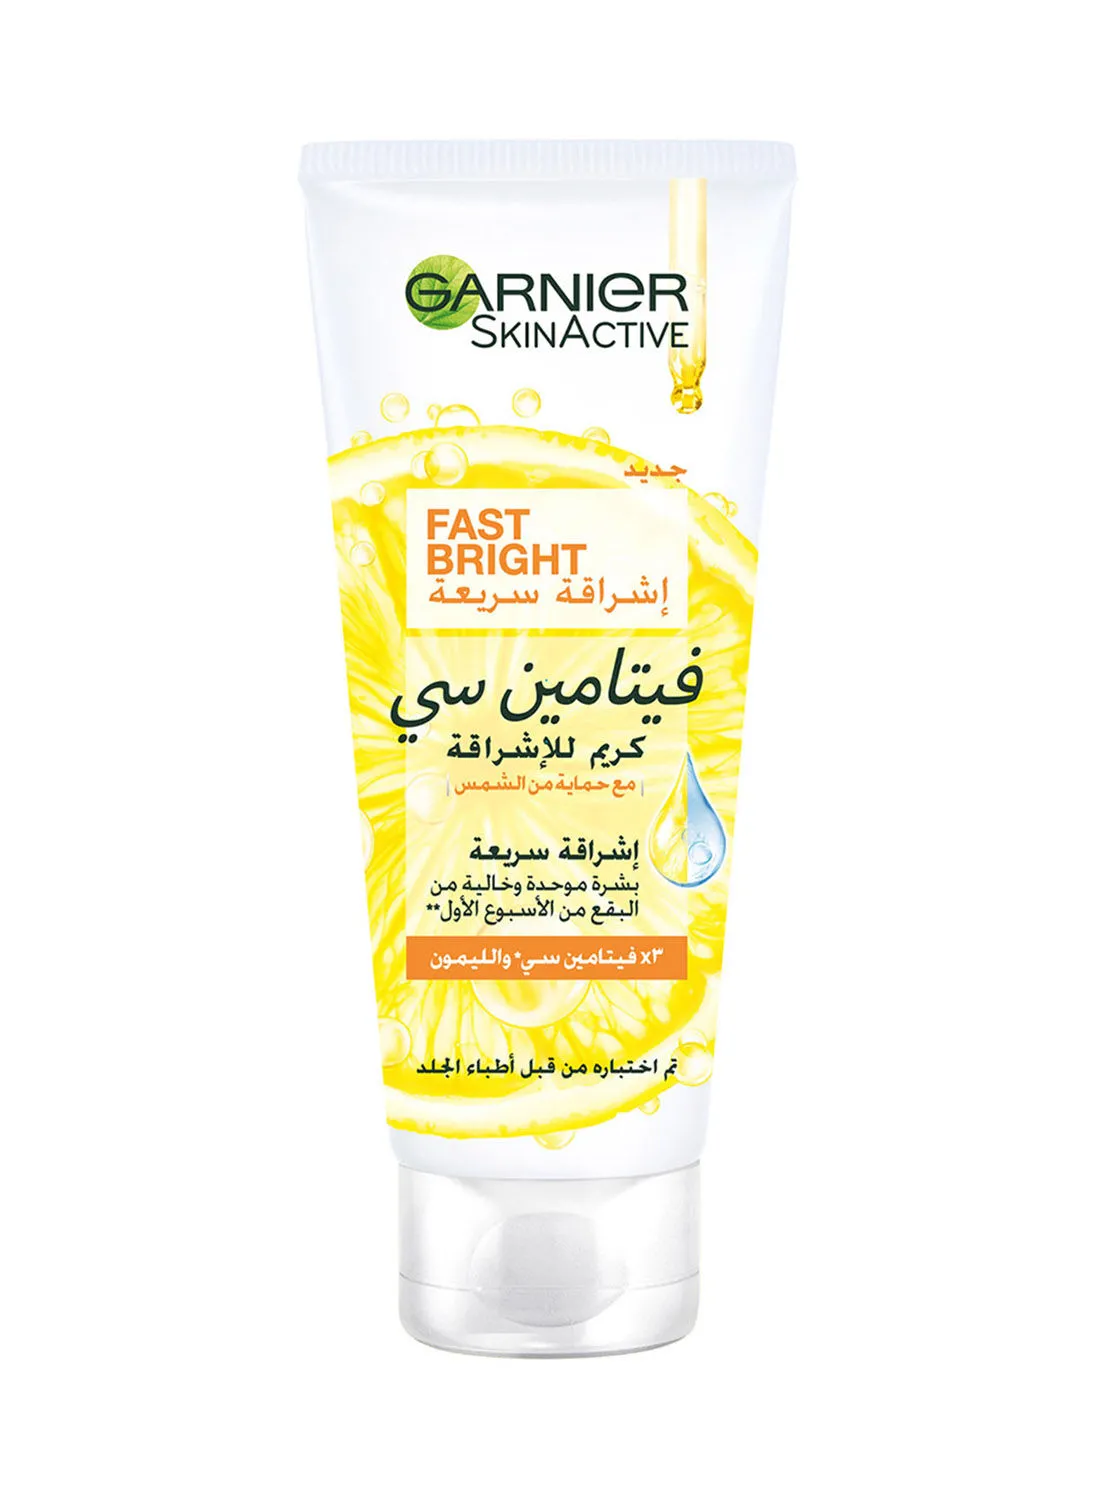 GARNIER SkinActive Fast Bright  Cream with 3x Vitamin C and Lemon White 100ml